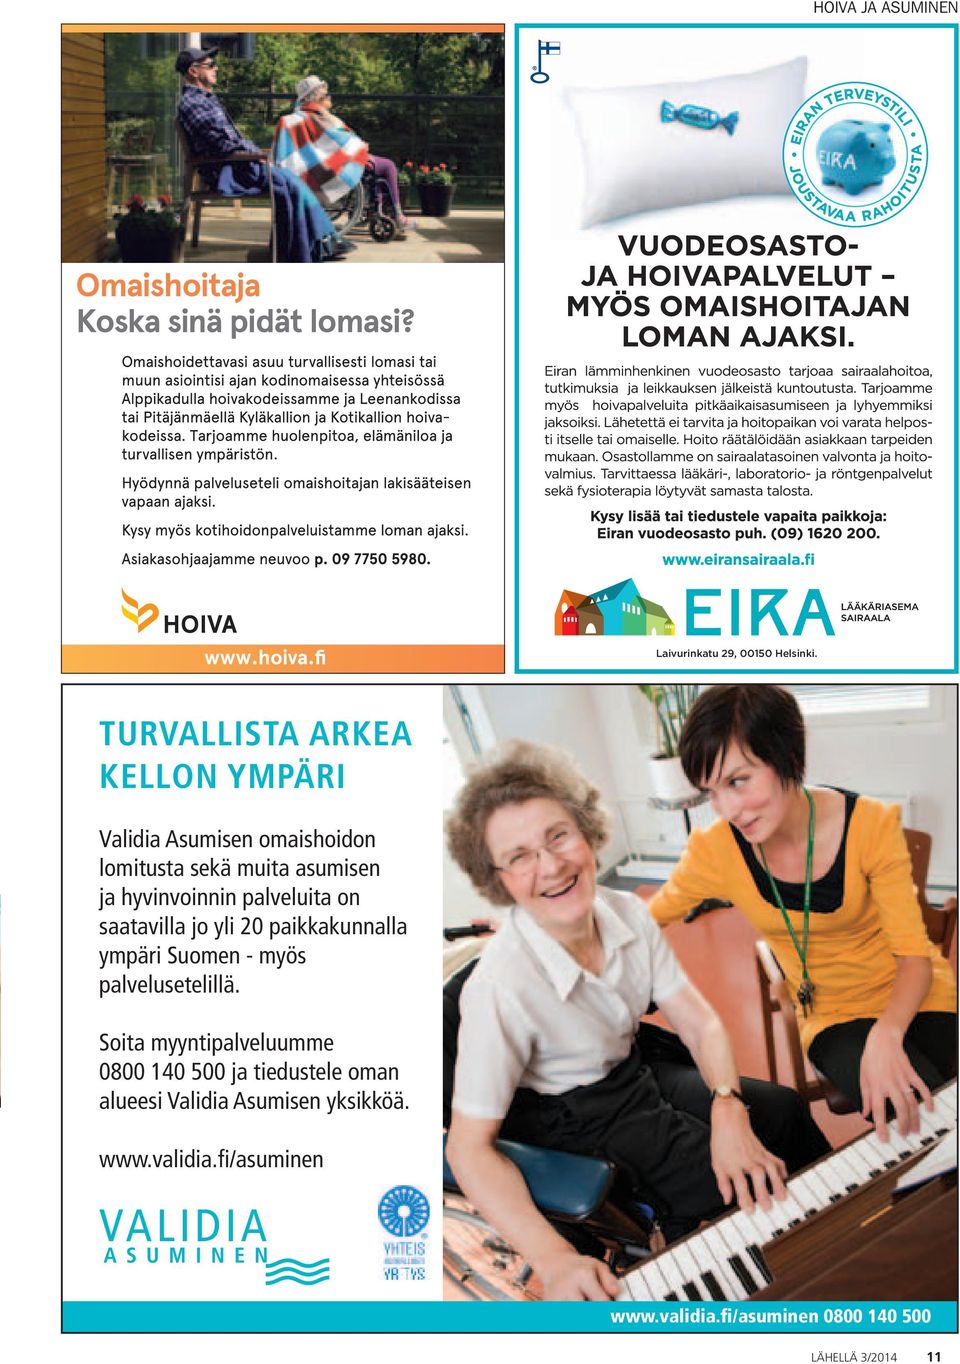 hyvinvoinnin palveluita on saatavilla jo yli 20 paikkakunnalla ympäri Suomen - myös palvelusetelillä.